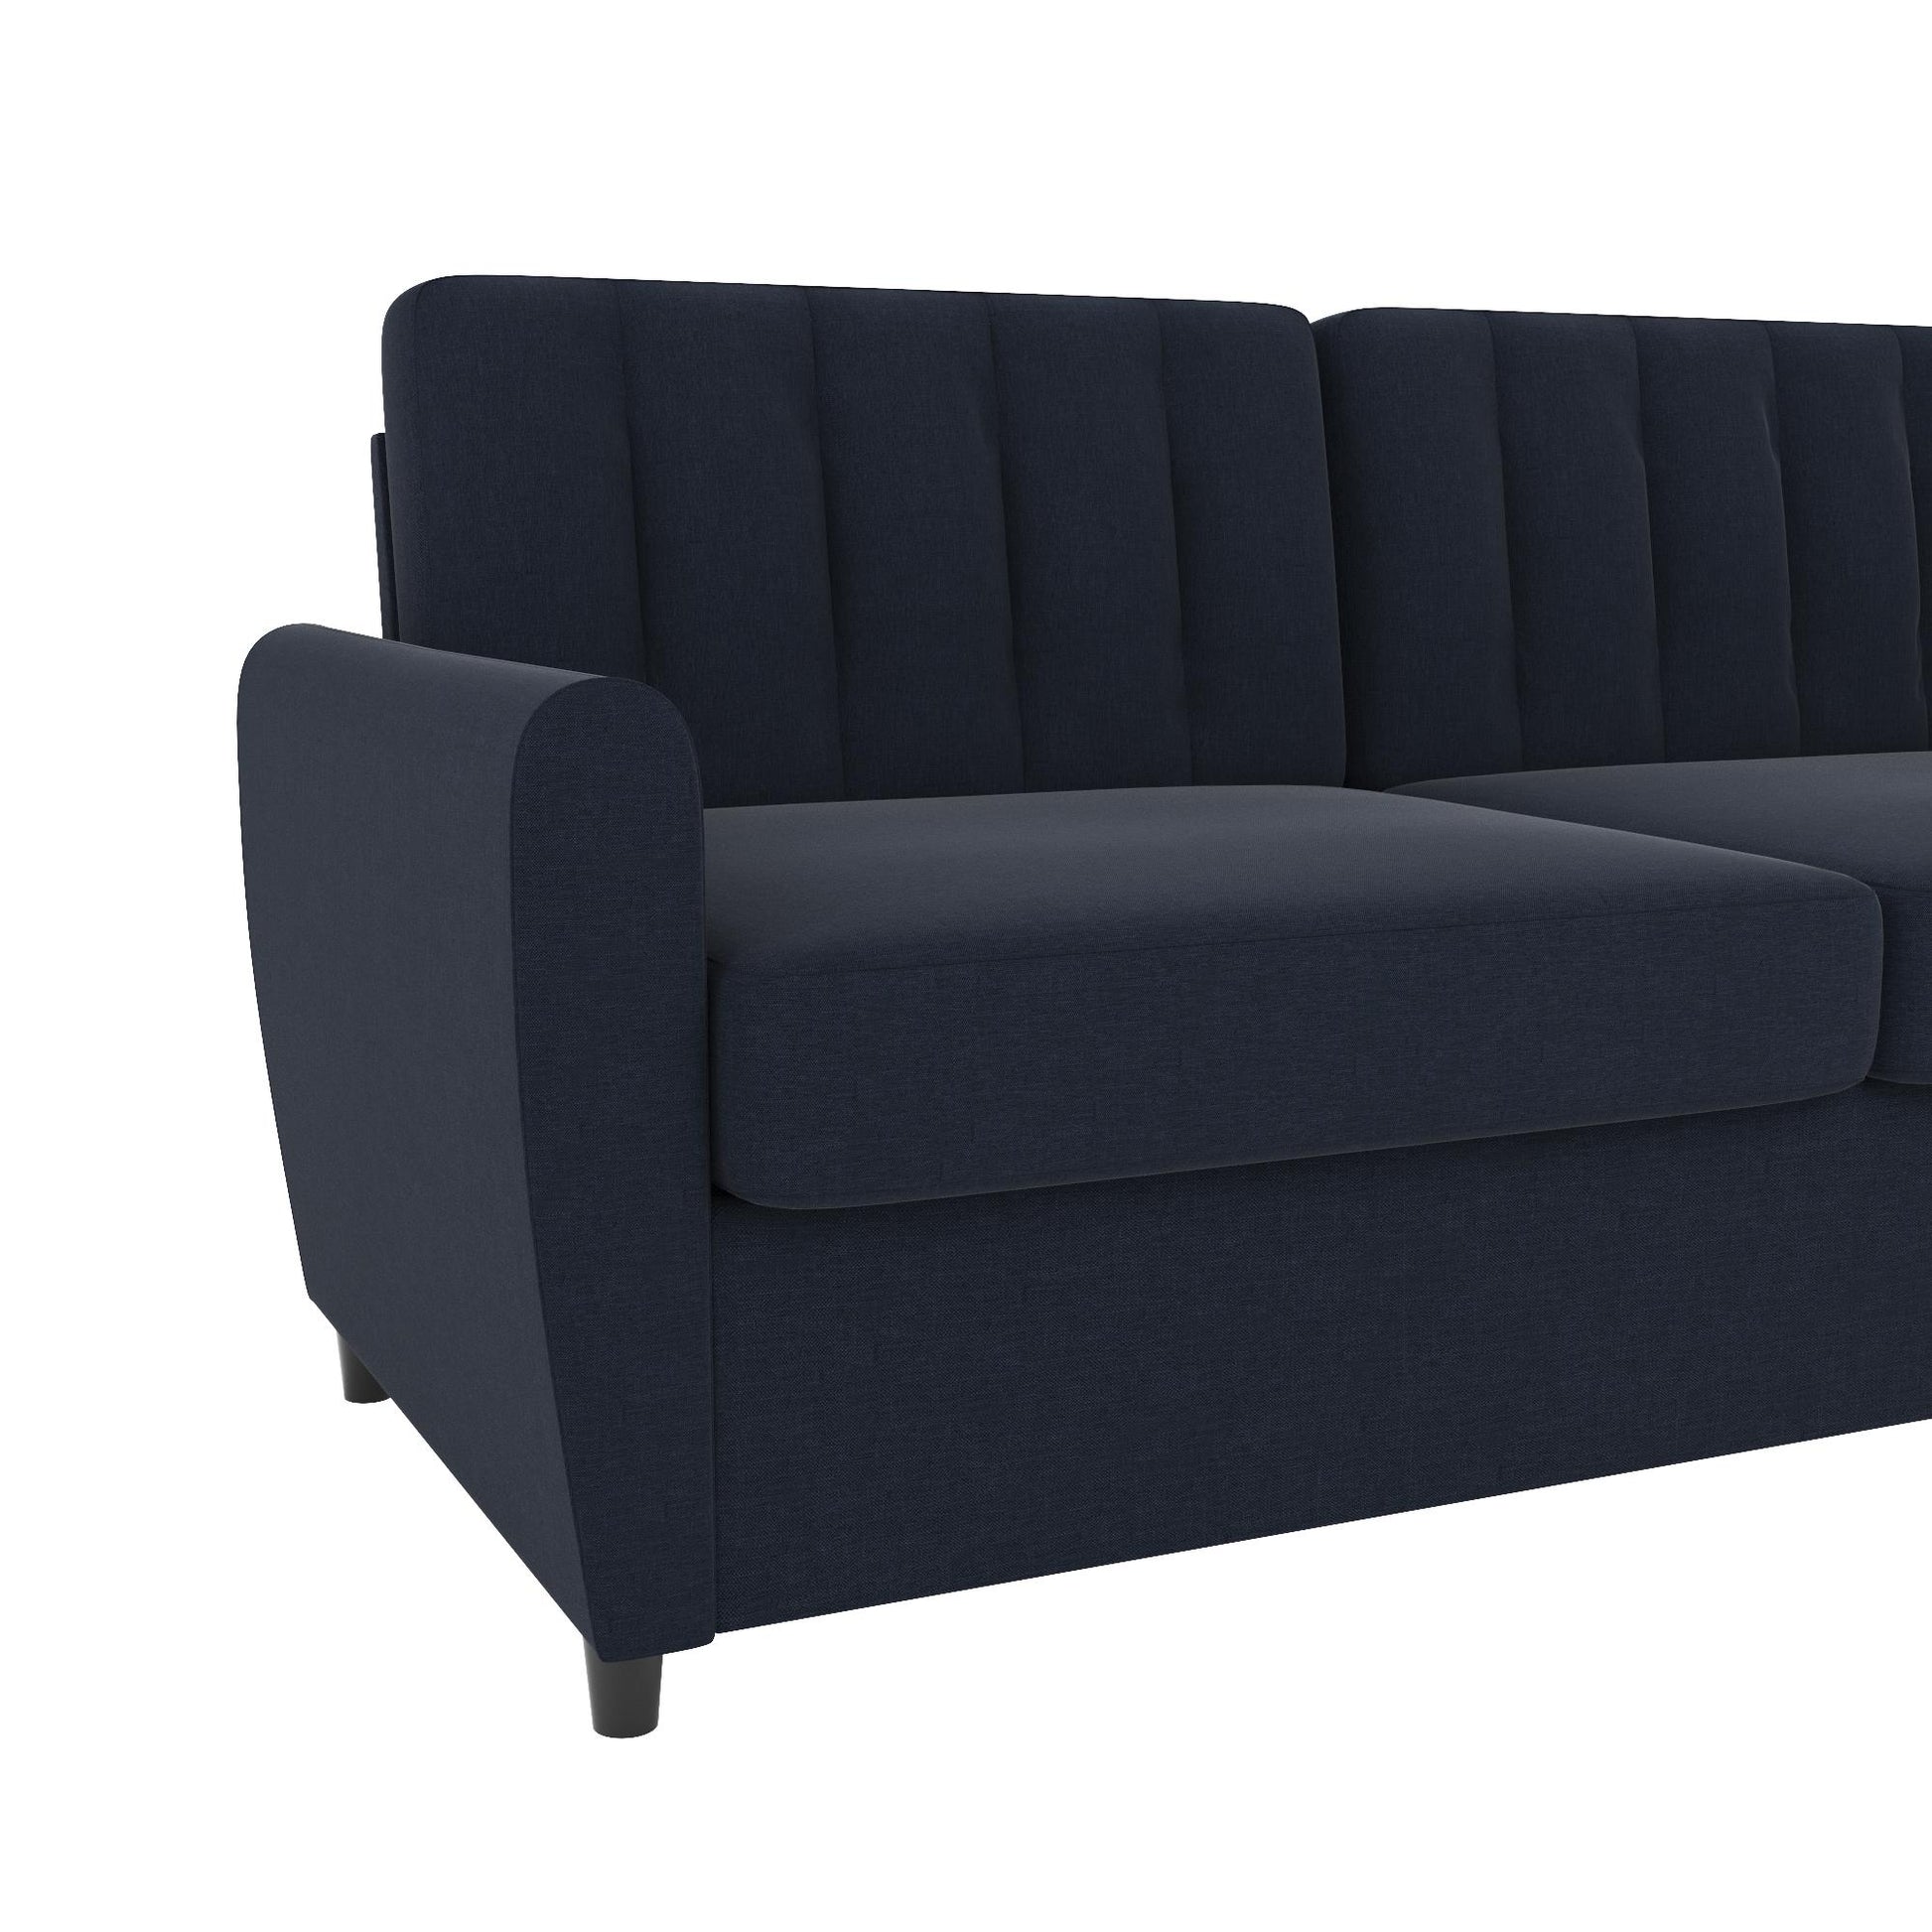 Novogratz Brittany Sleeper Sofa with Memory Foam Mattress, Queen, Blue Linen - Blue Linen - Queen